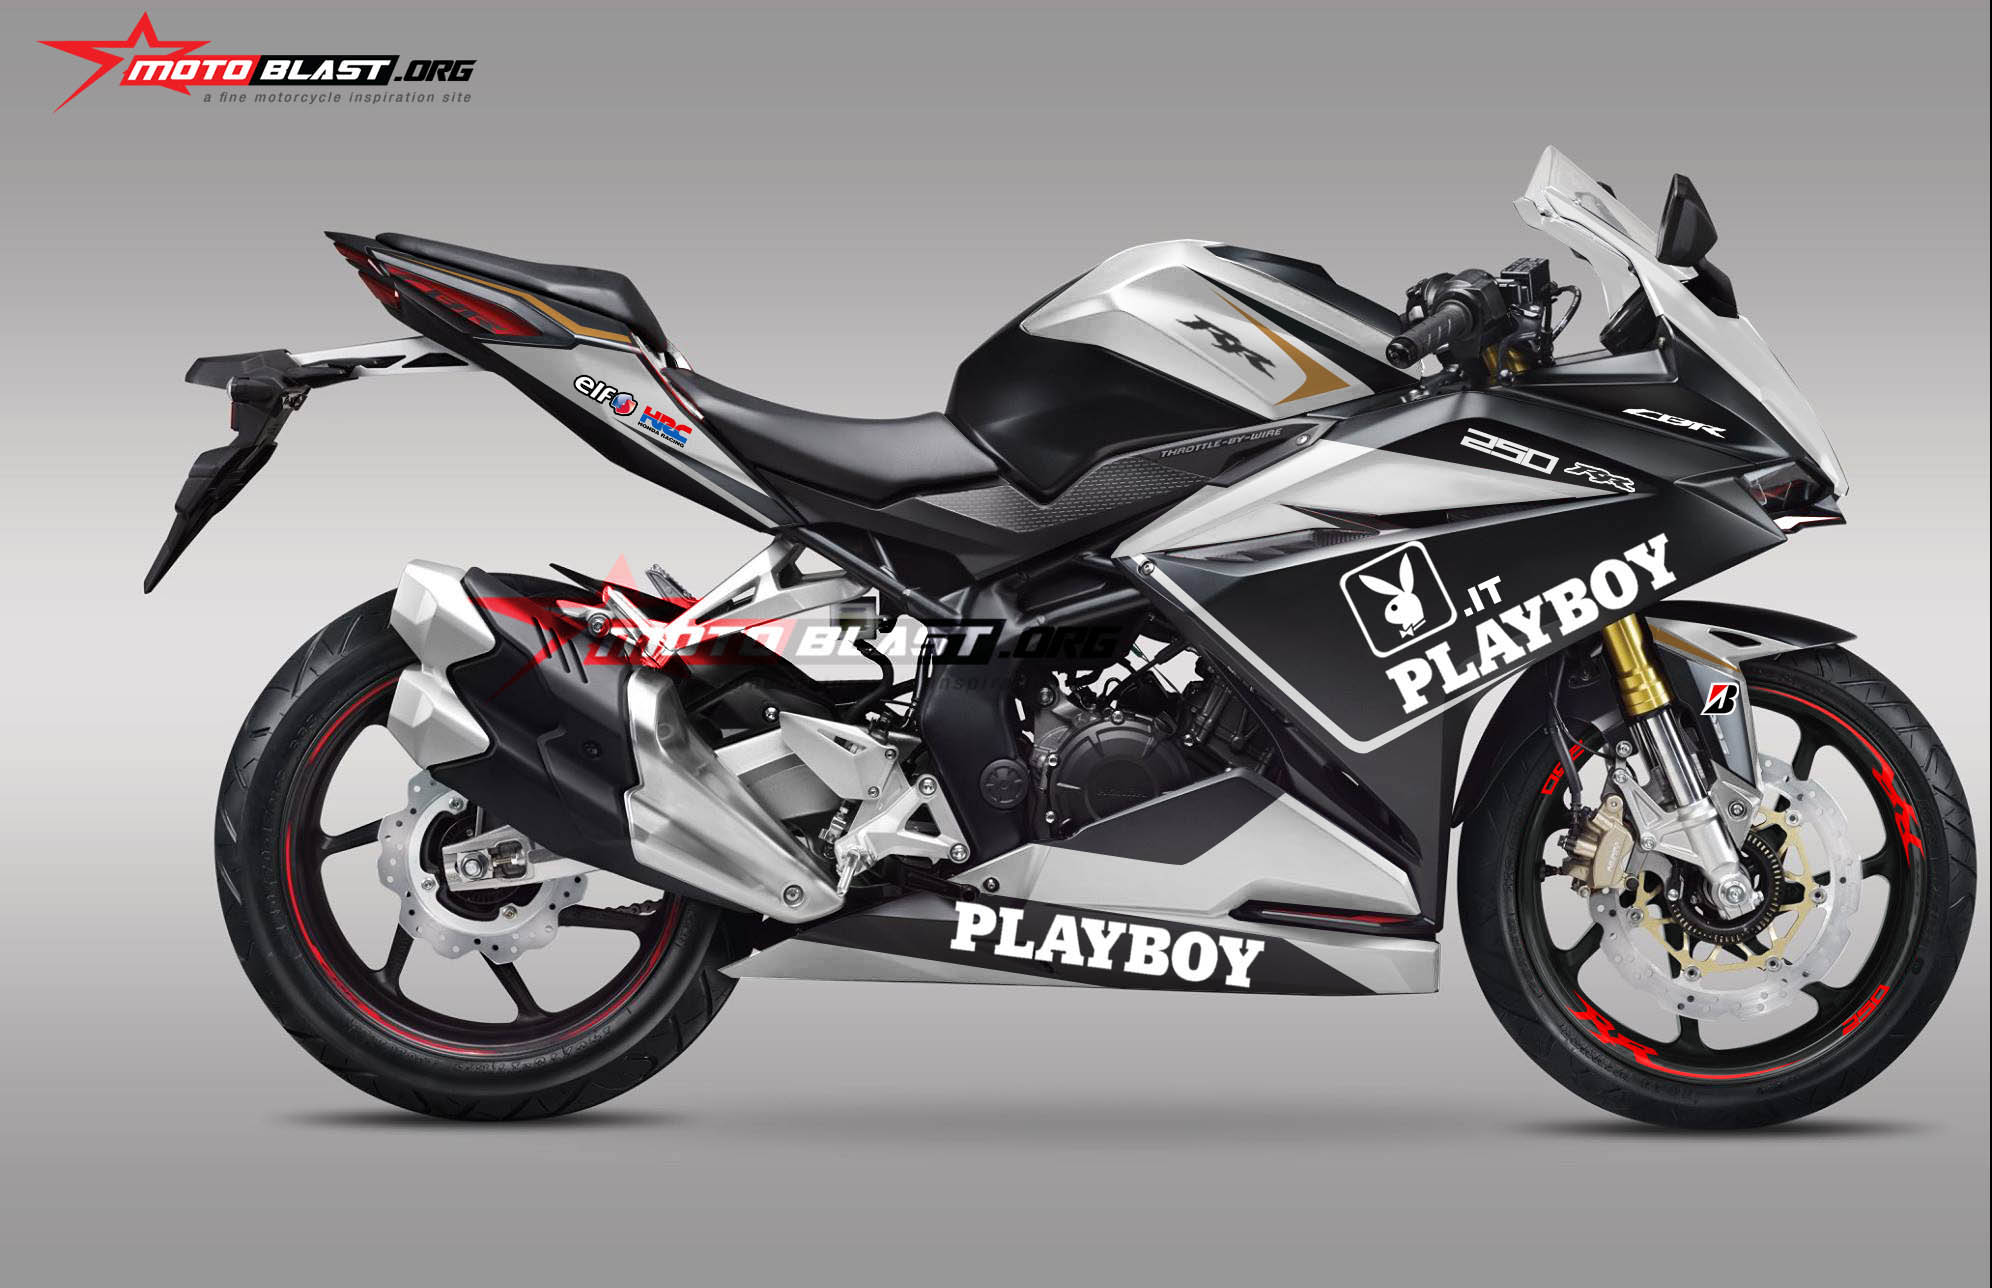 Motoblast Modifikasi Striping Honda CBR250RR Black Playboy